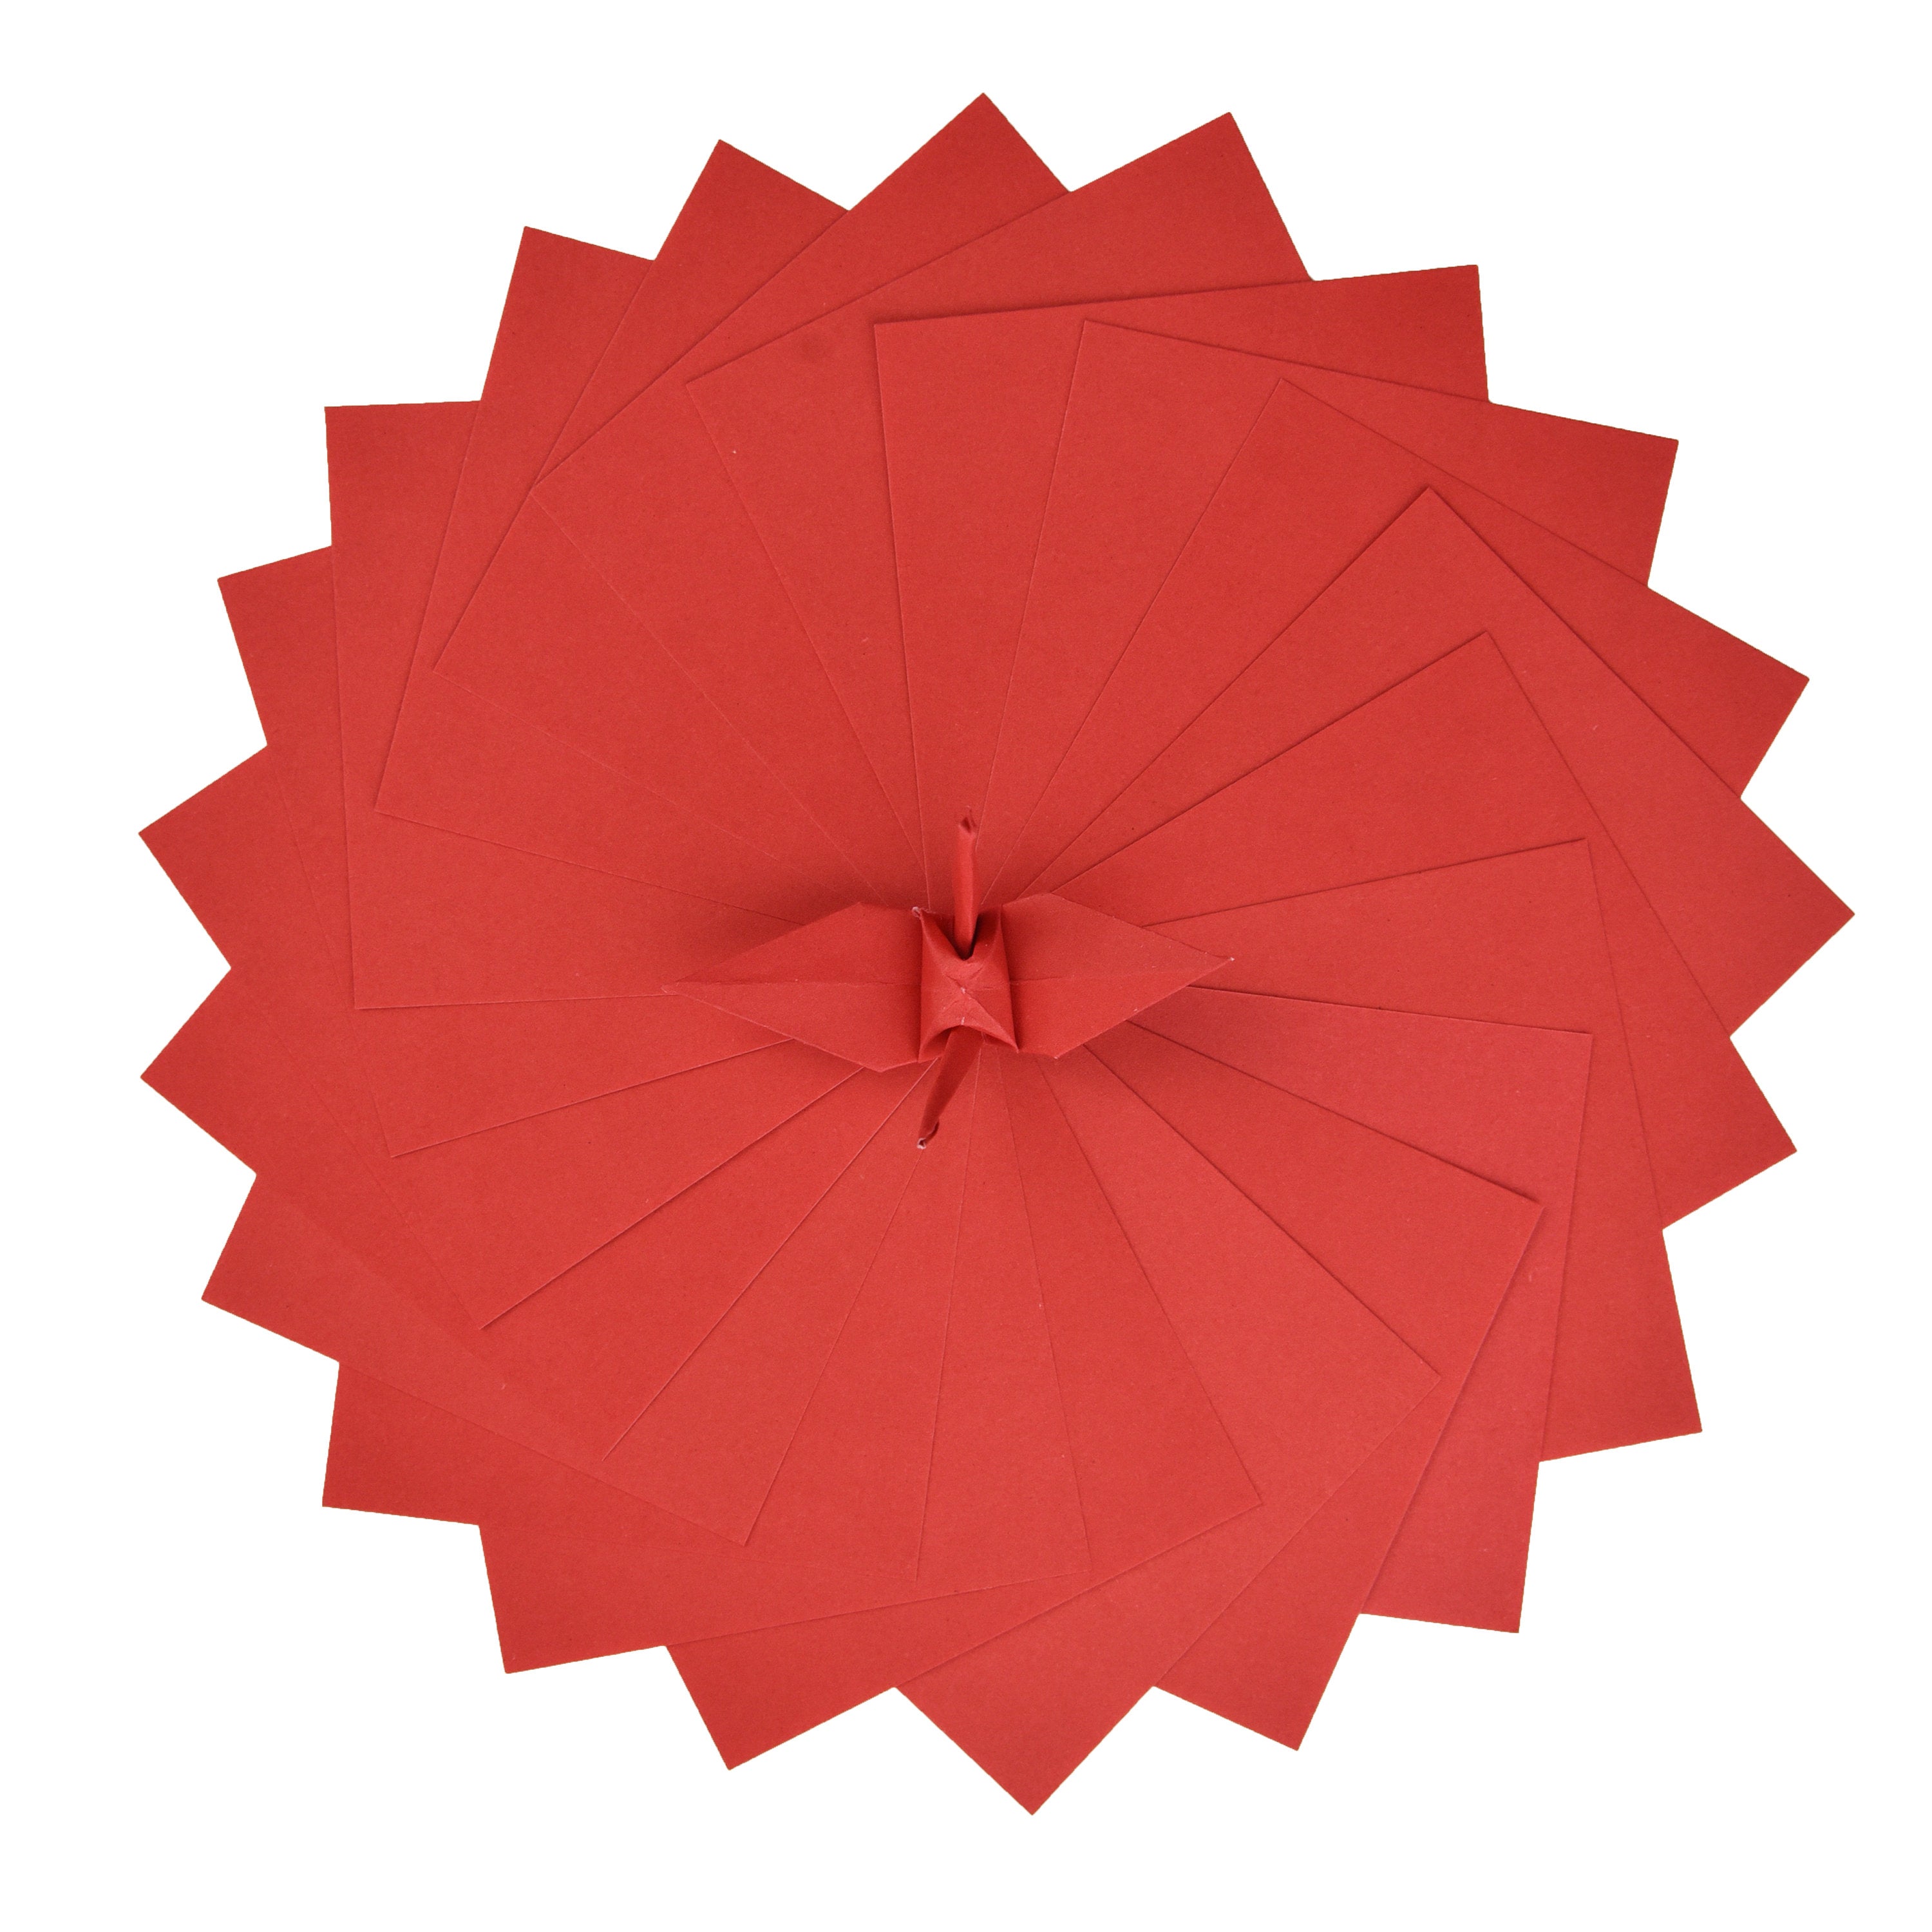 100 Hojas de Papel Origami Rojo - 3x3 pulgadas - Paquete de Papel Cuadrado para Plegar, Grullas de Origami y Decoración - S16